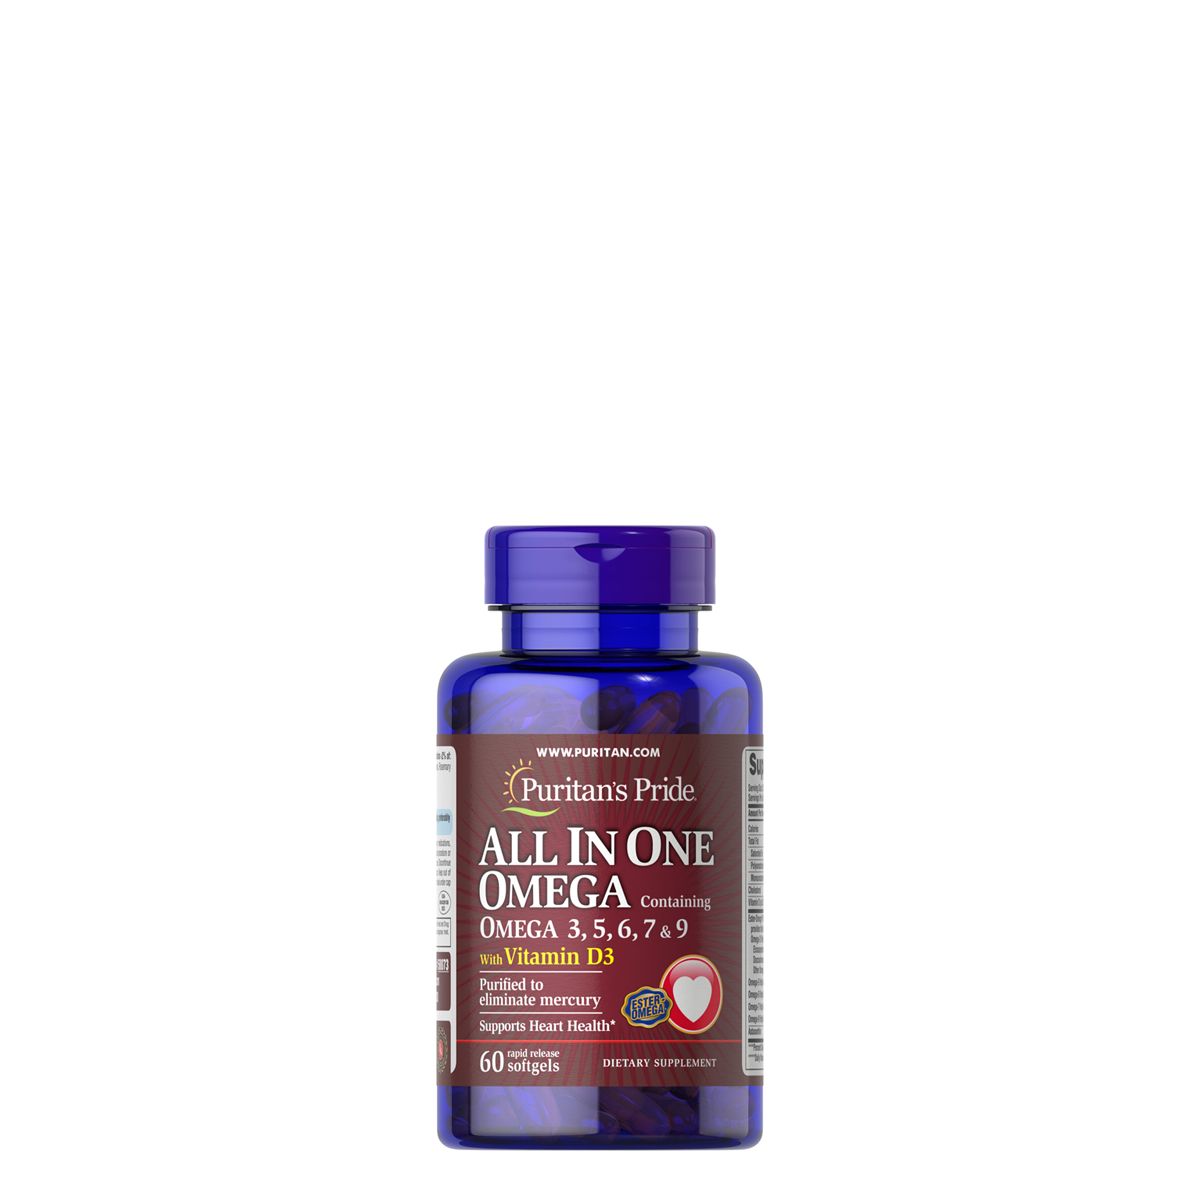 Omega zsírsav komplex D3 vitaminnal, Puritan's Pride All In One Omega with D3, 60 kapszula